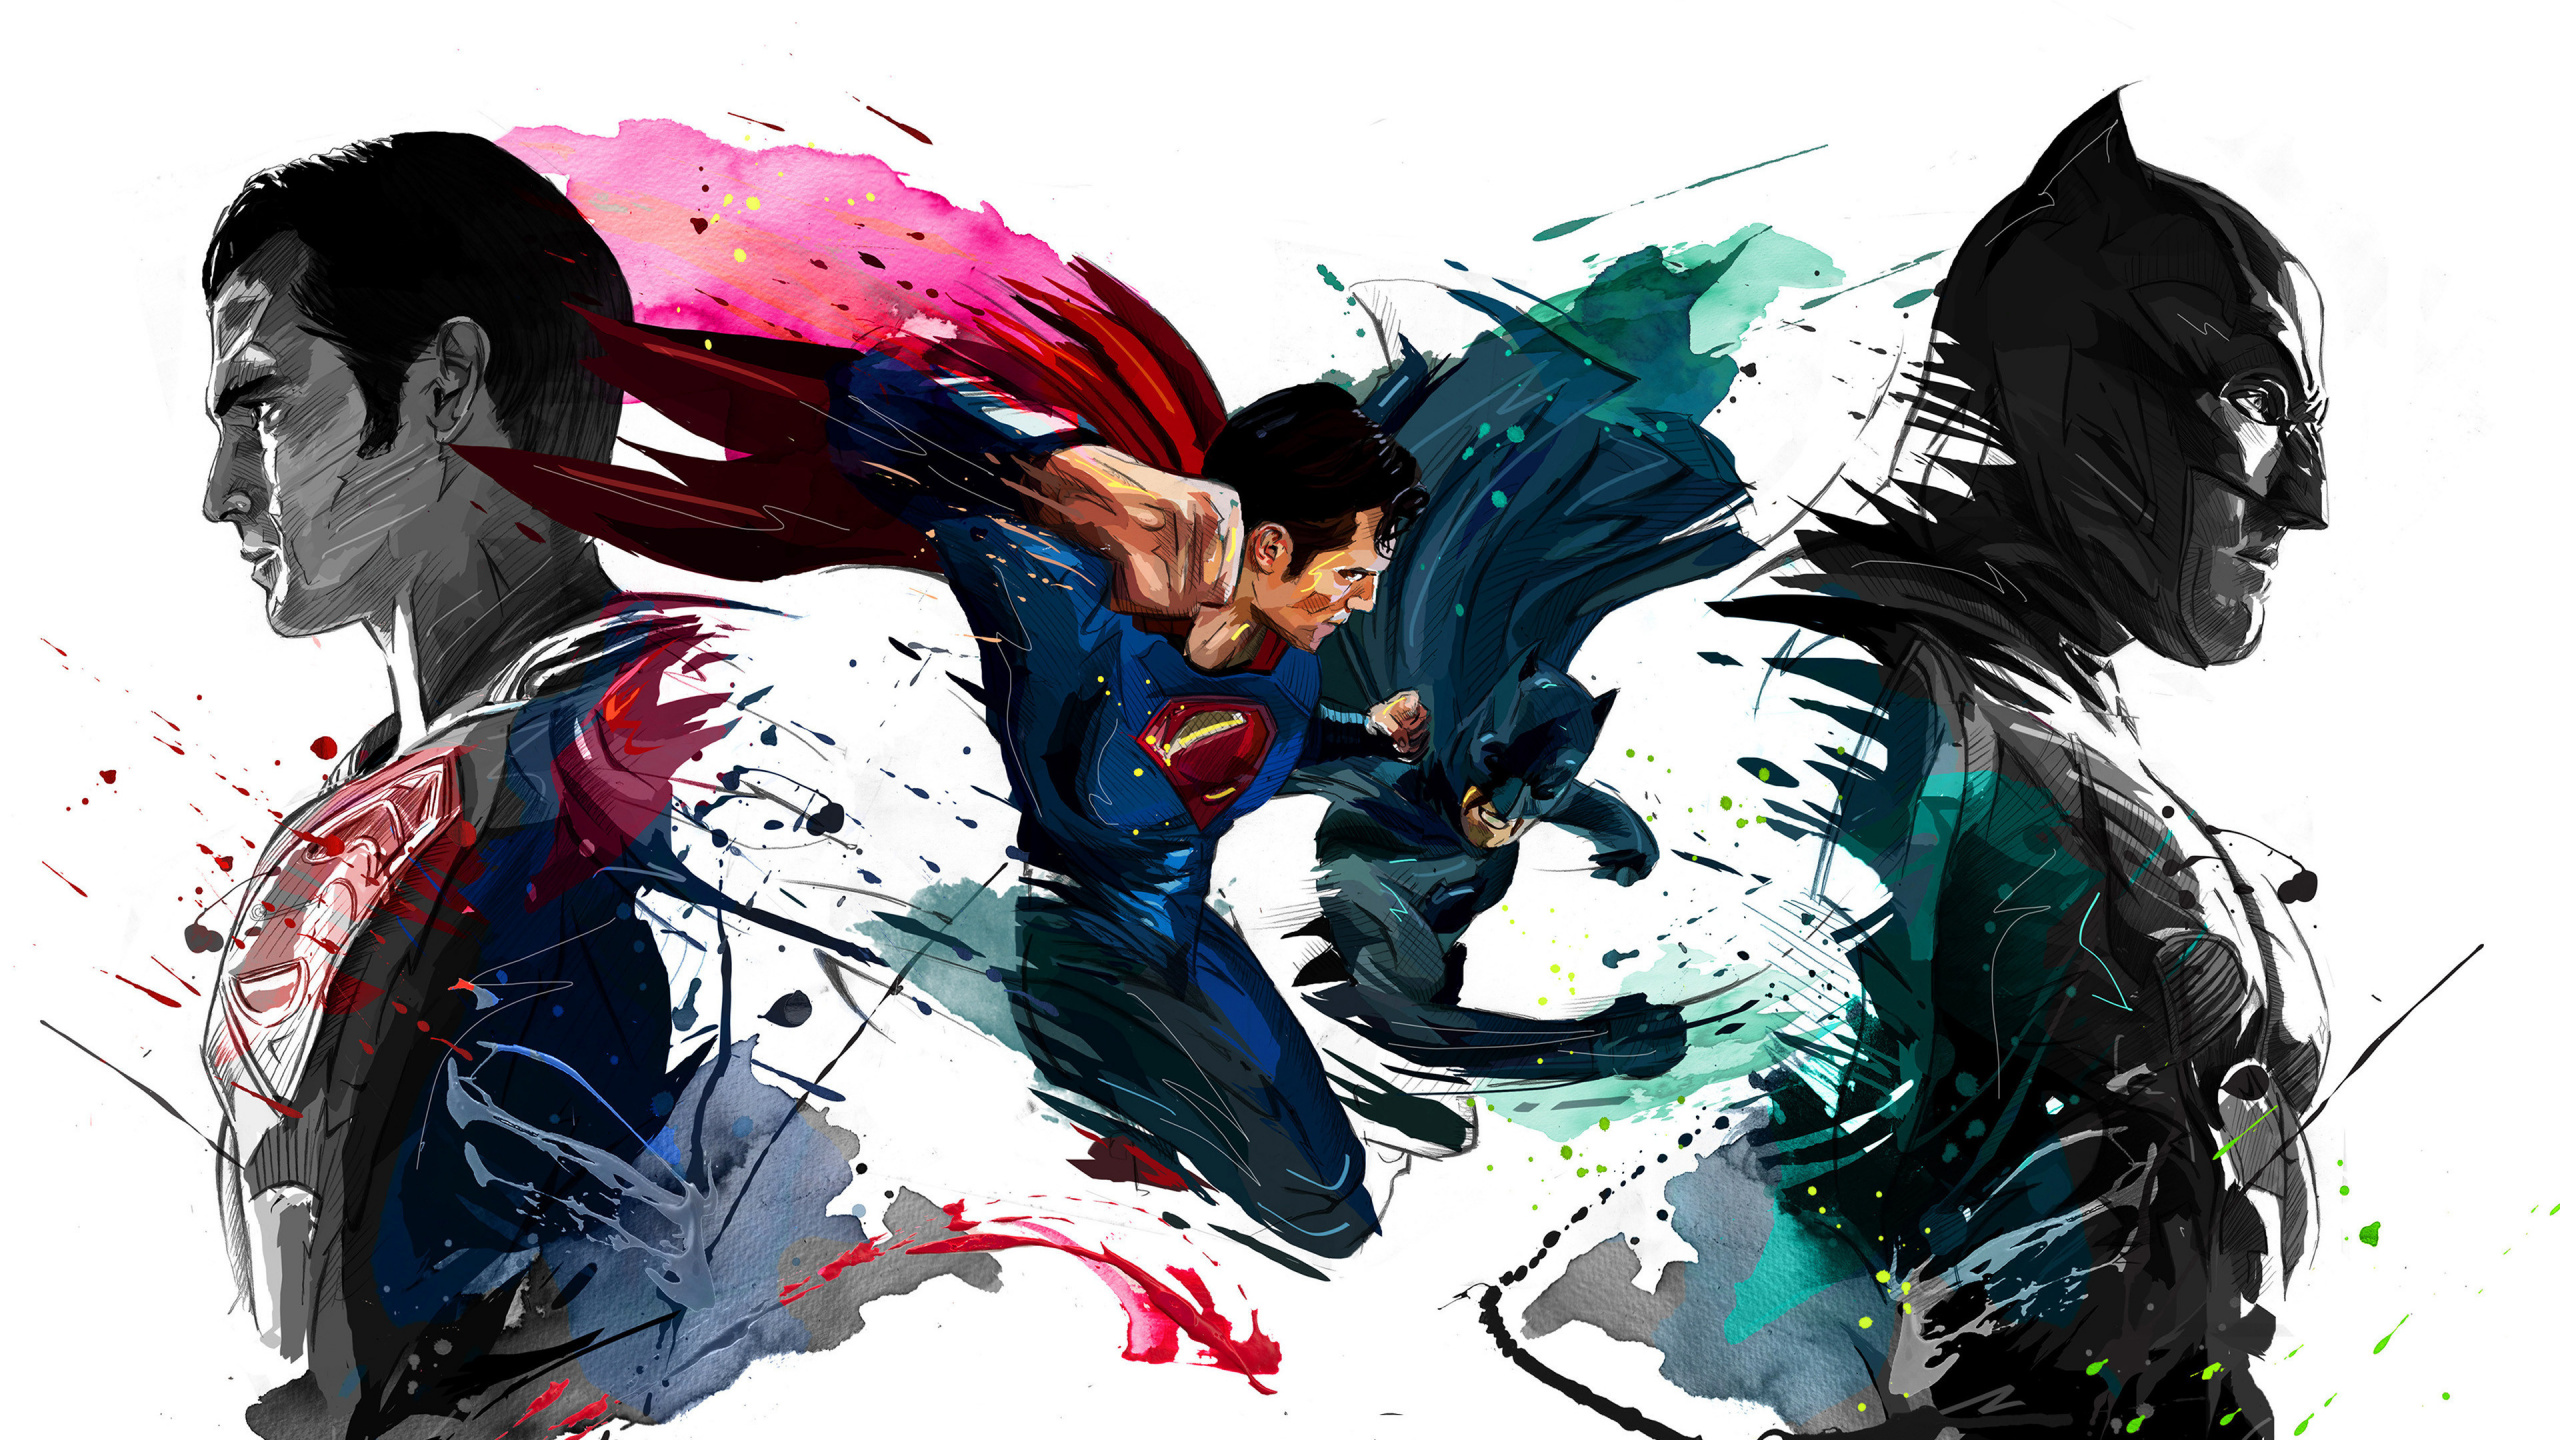 蝙蝠侠, 超级英雄, Dc漫画, 图形设计, 艺术 壁纸 2560x1440 允许